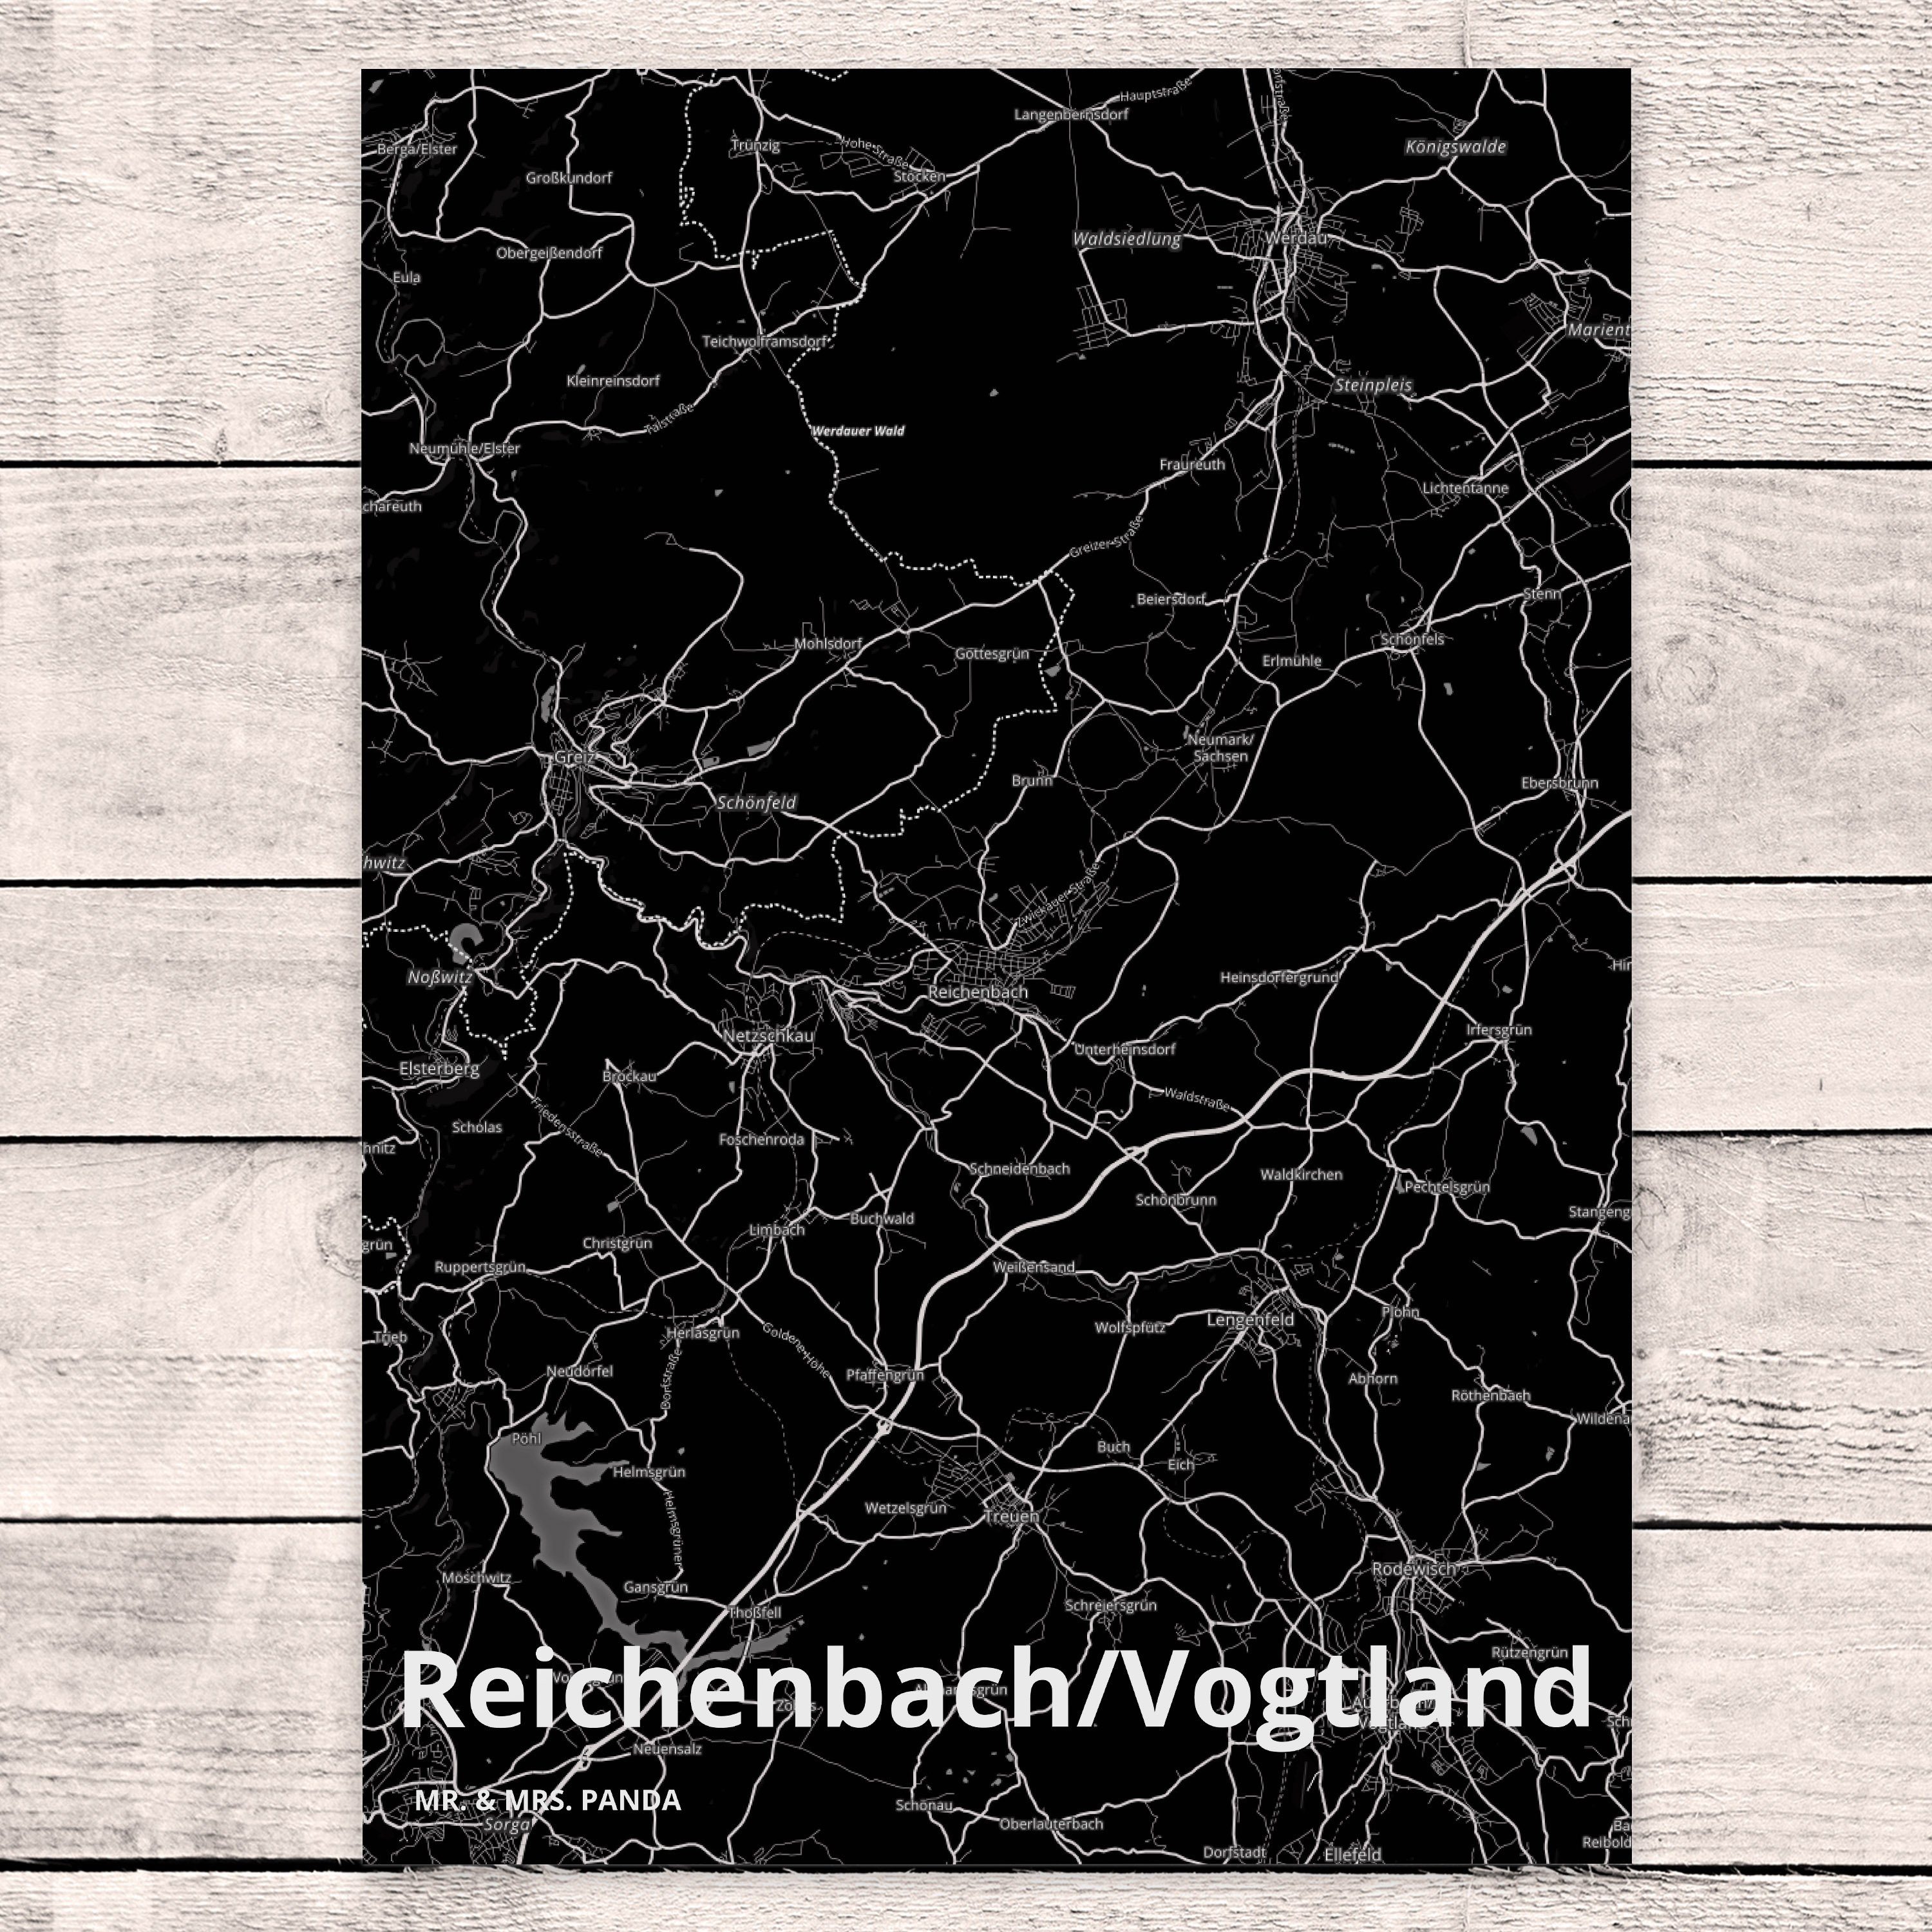 Mr. & Mrs. Panda Geschenk, Einladung Geburtstagskarte, Reichenbach/Vogtland Postkarte Karte, 